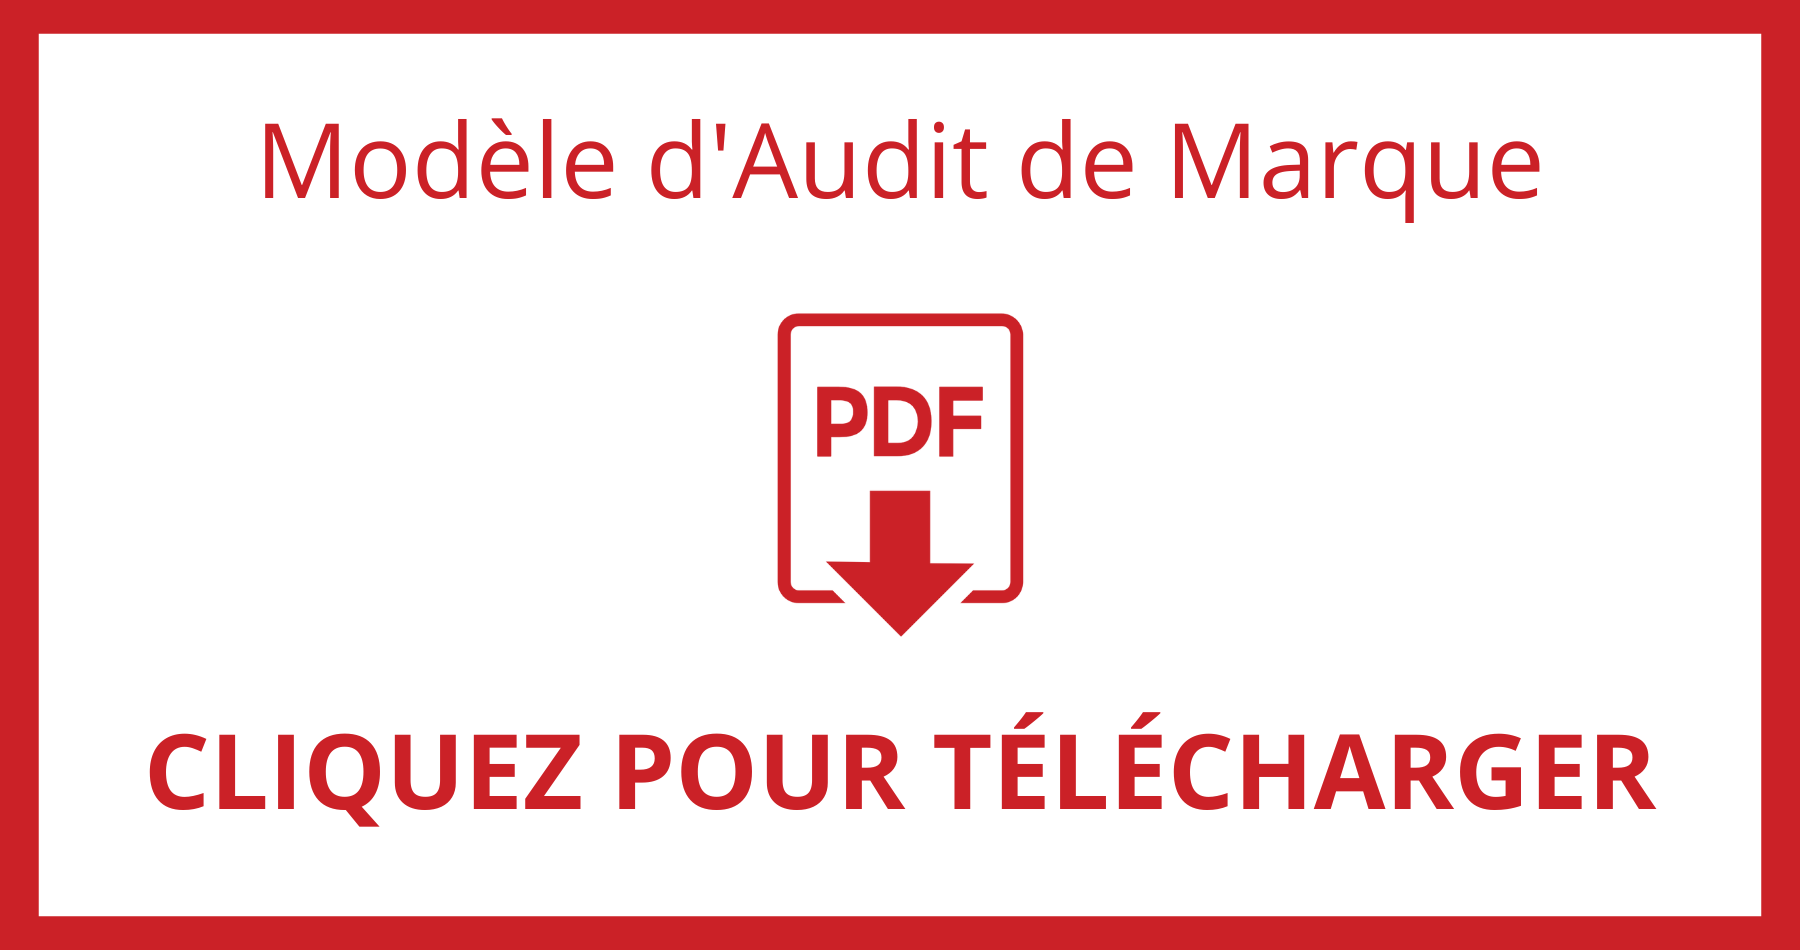 Brand audit template download fr